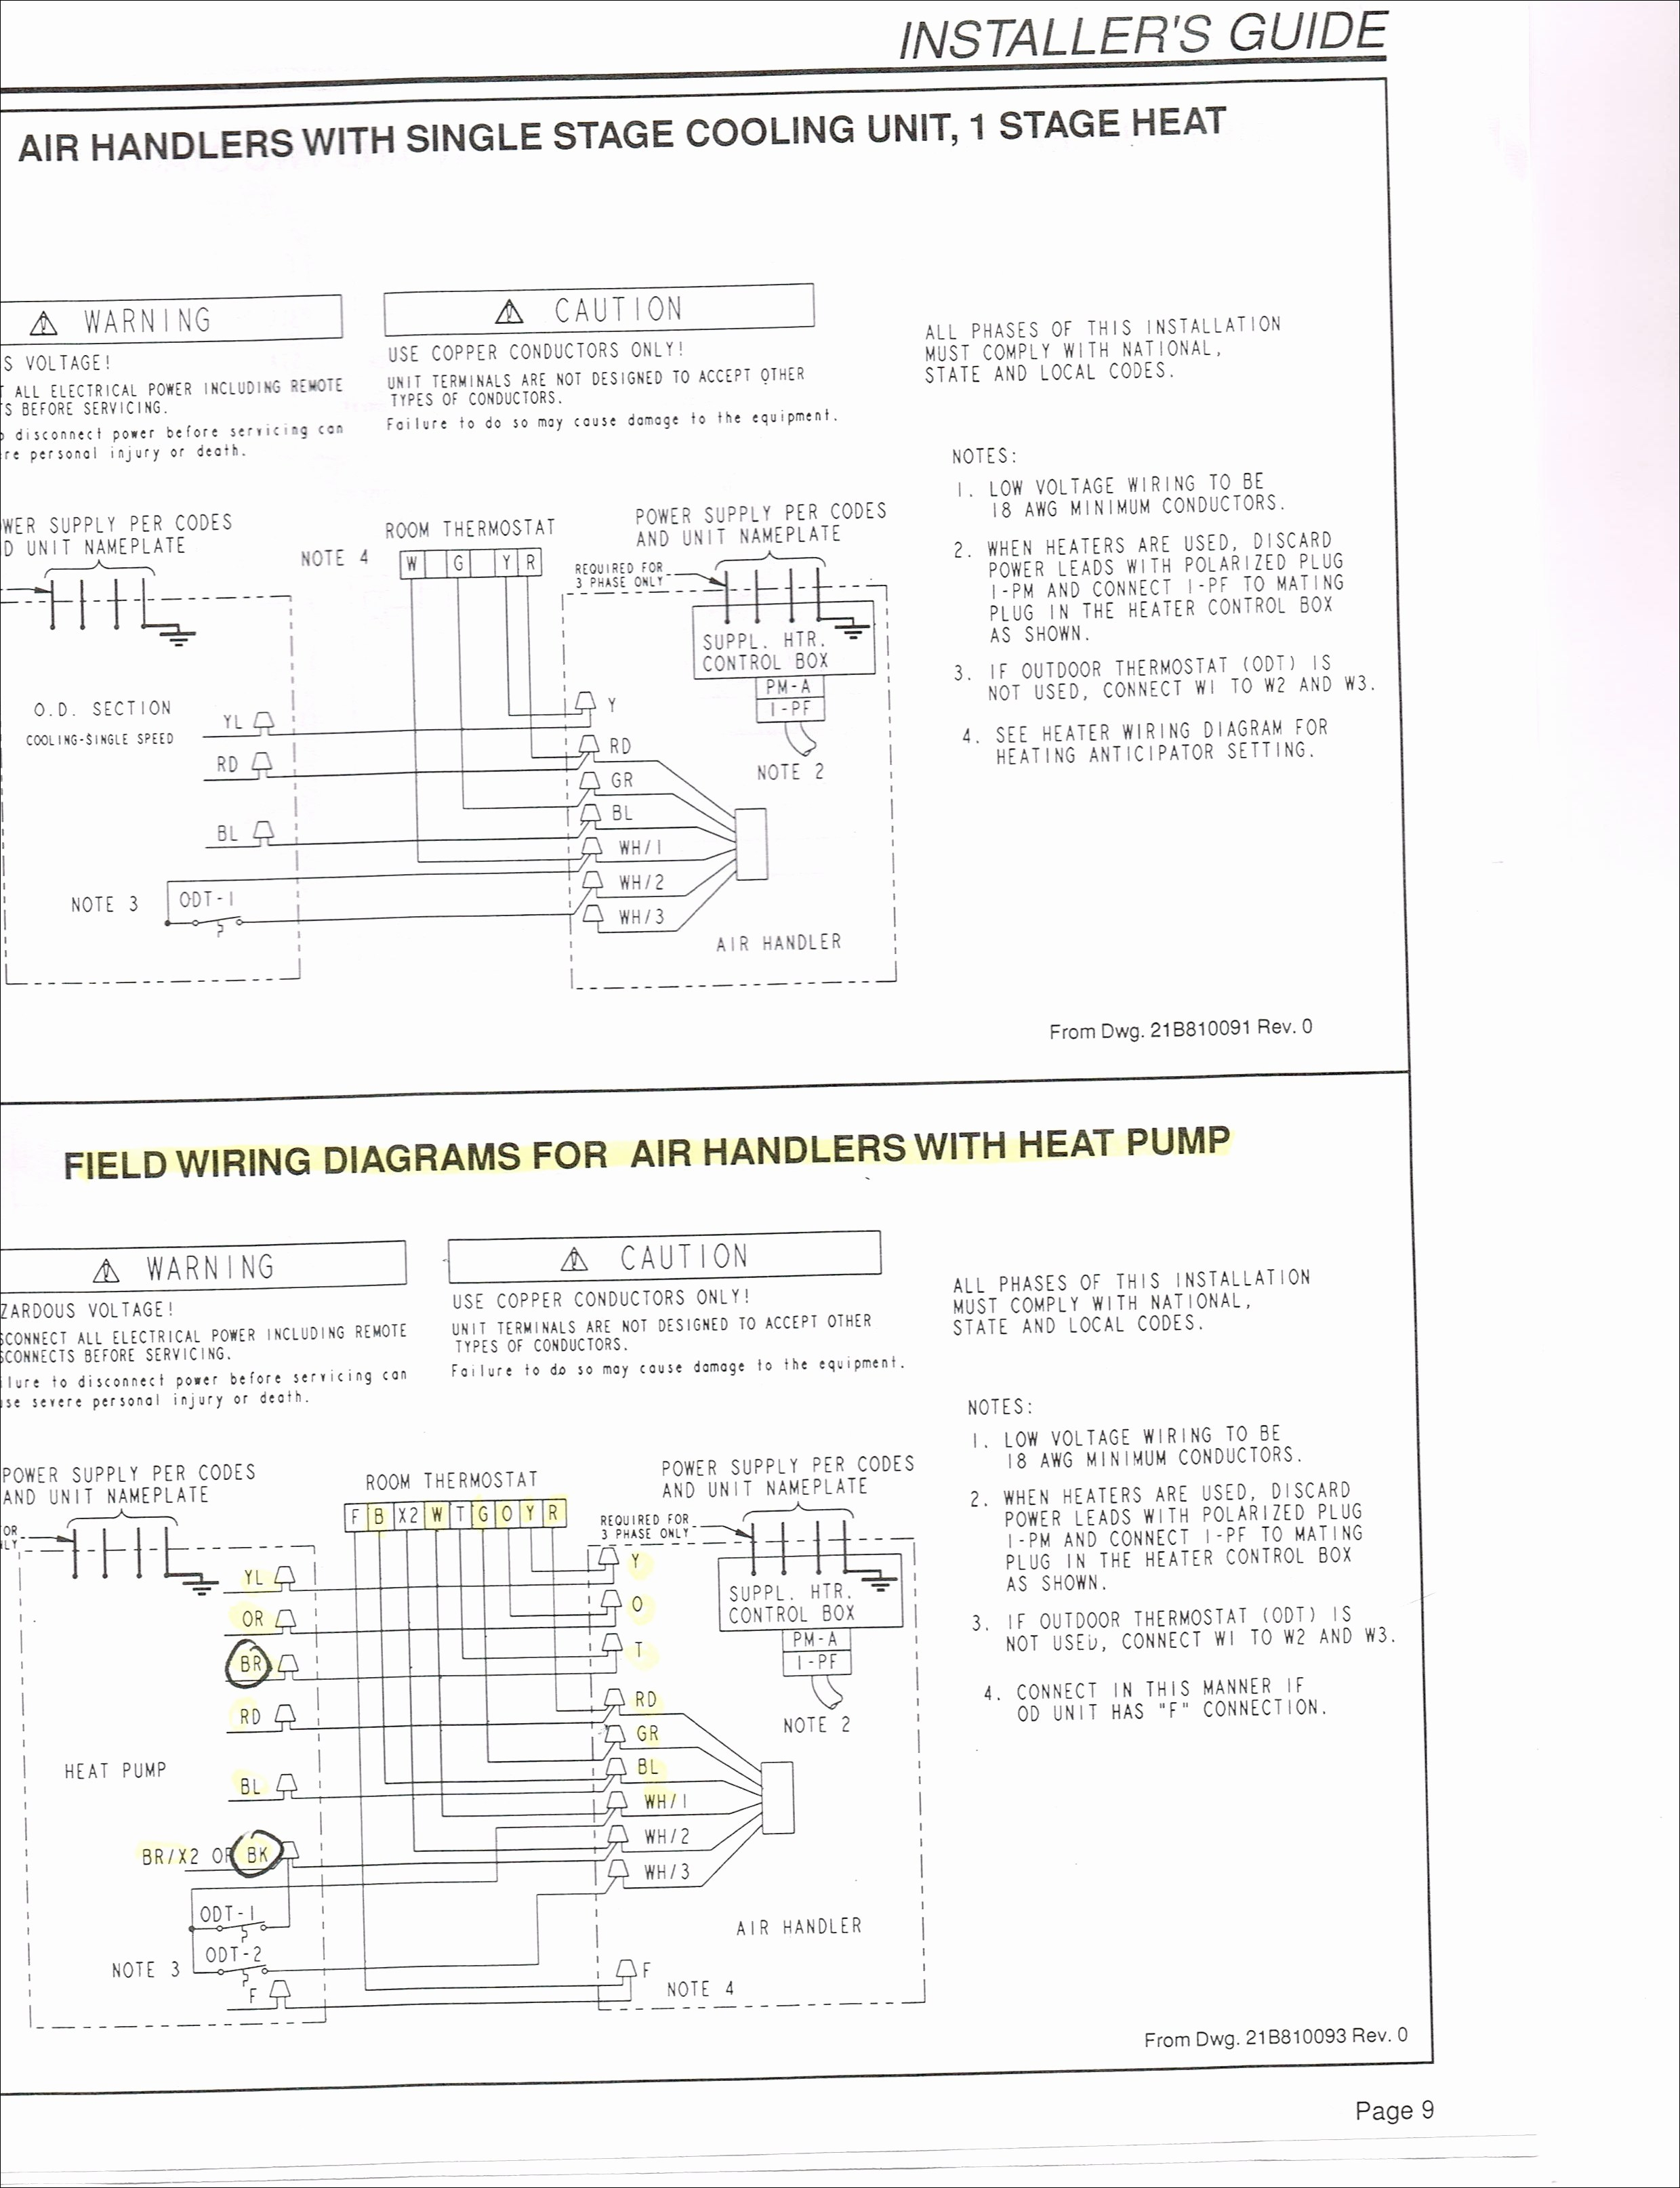 Air Compressor 230V 1 Phase Wiring Diagram | Manual E-Books - Air Compressor Wiring Diagram 230V 1 Phase